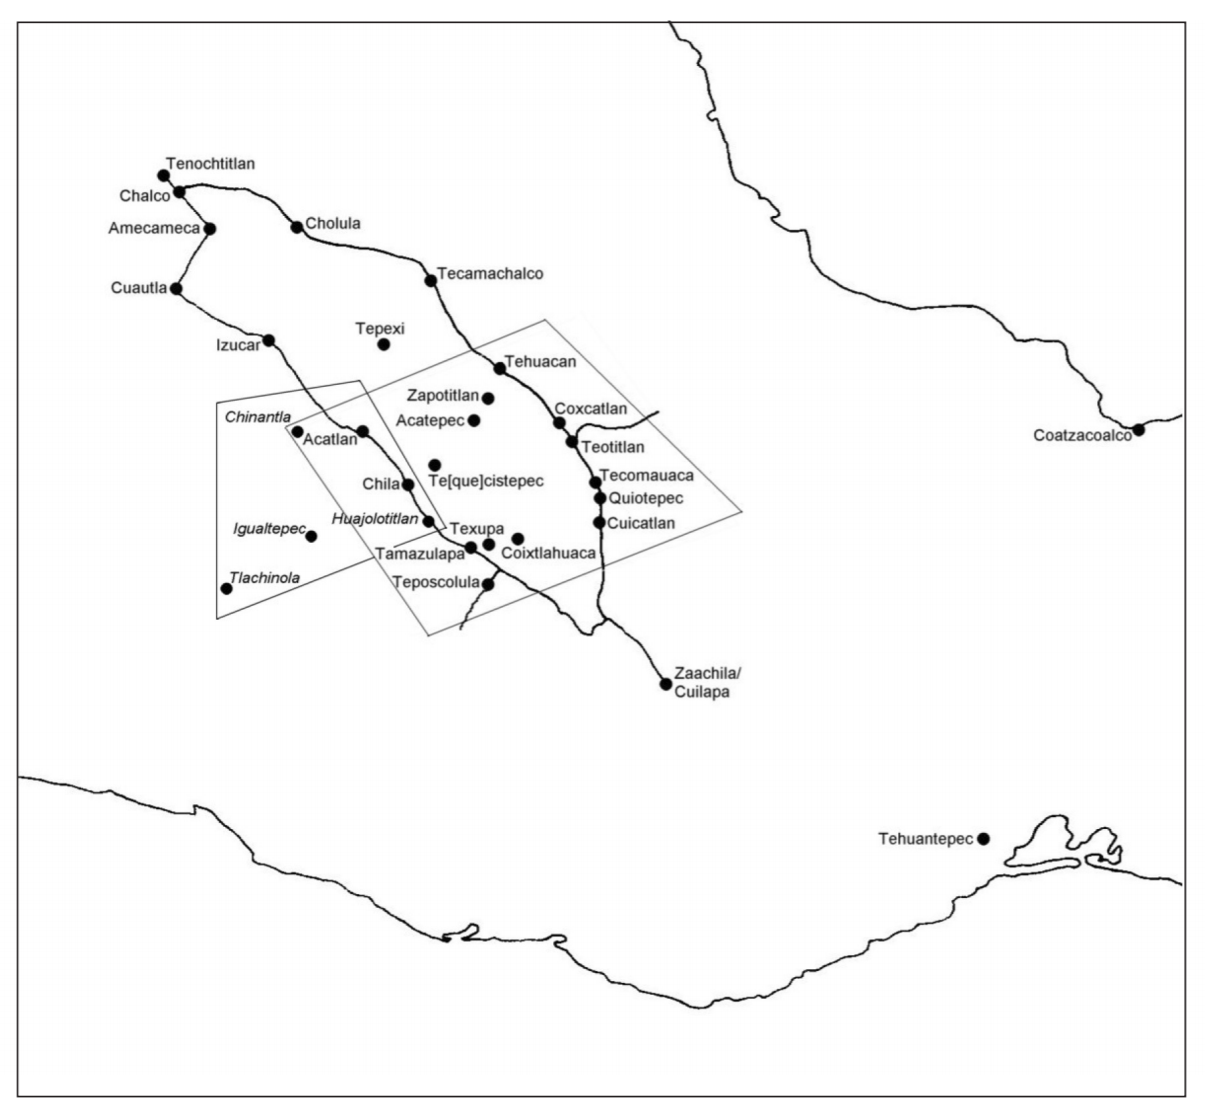 La correlación entre las rutas comerciales y las conquistas de Mazatzin de 1520